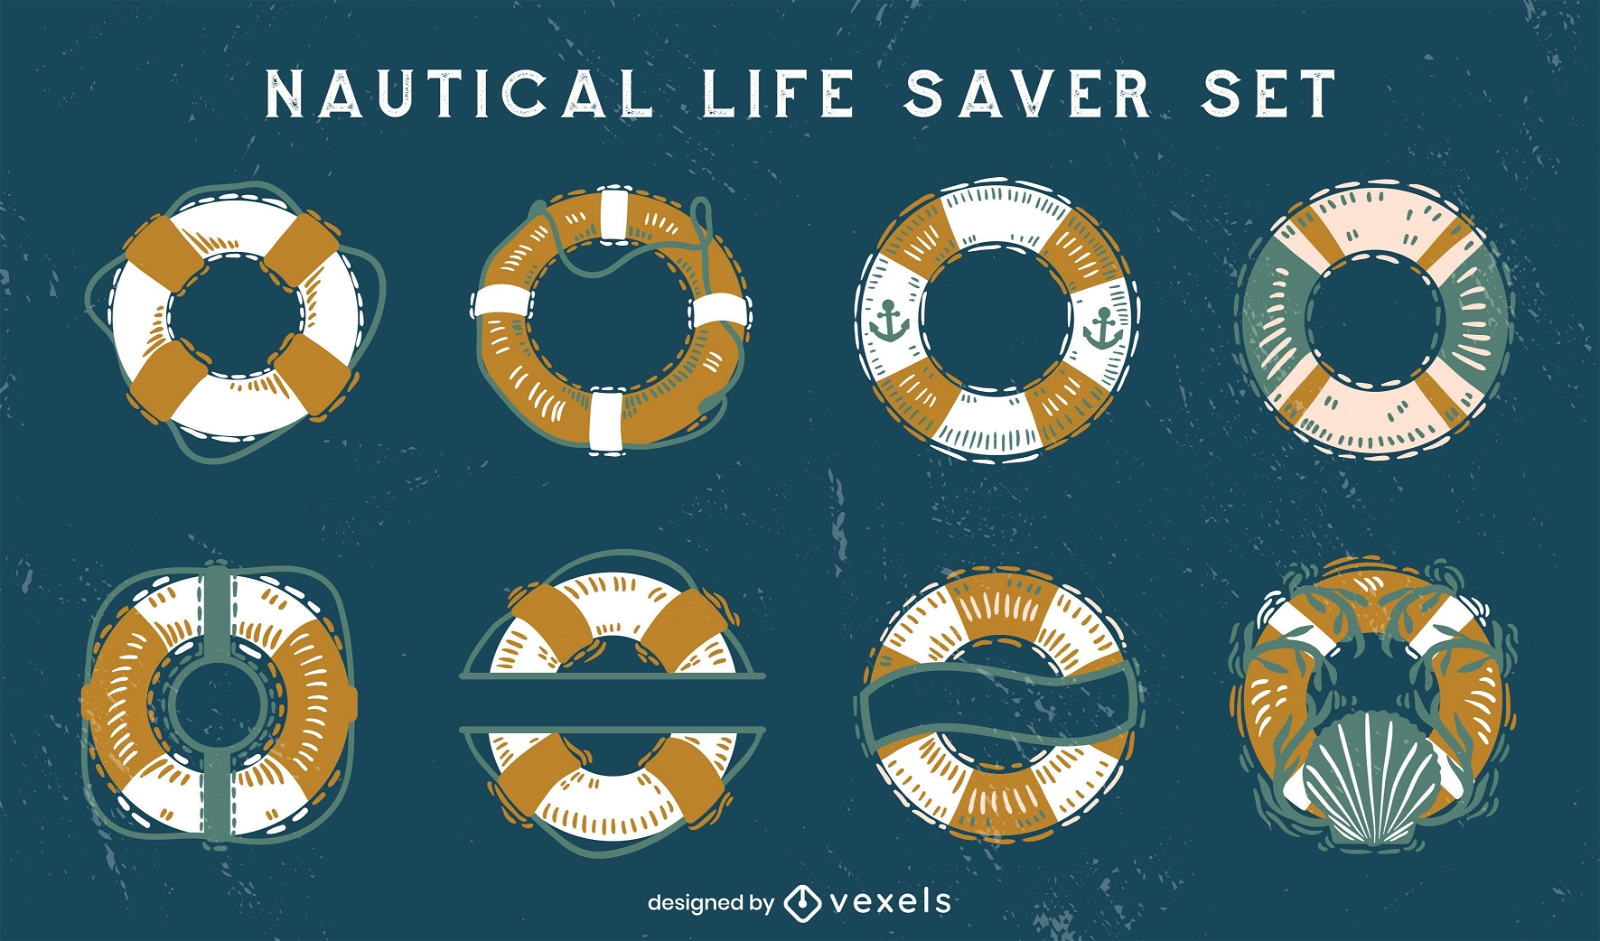 Nautical life savers